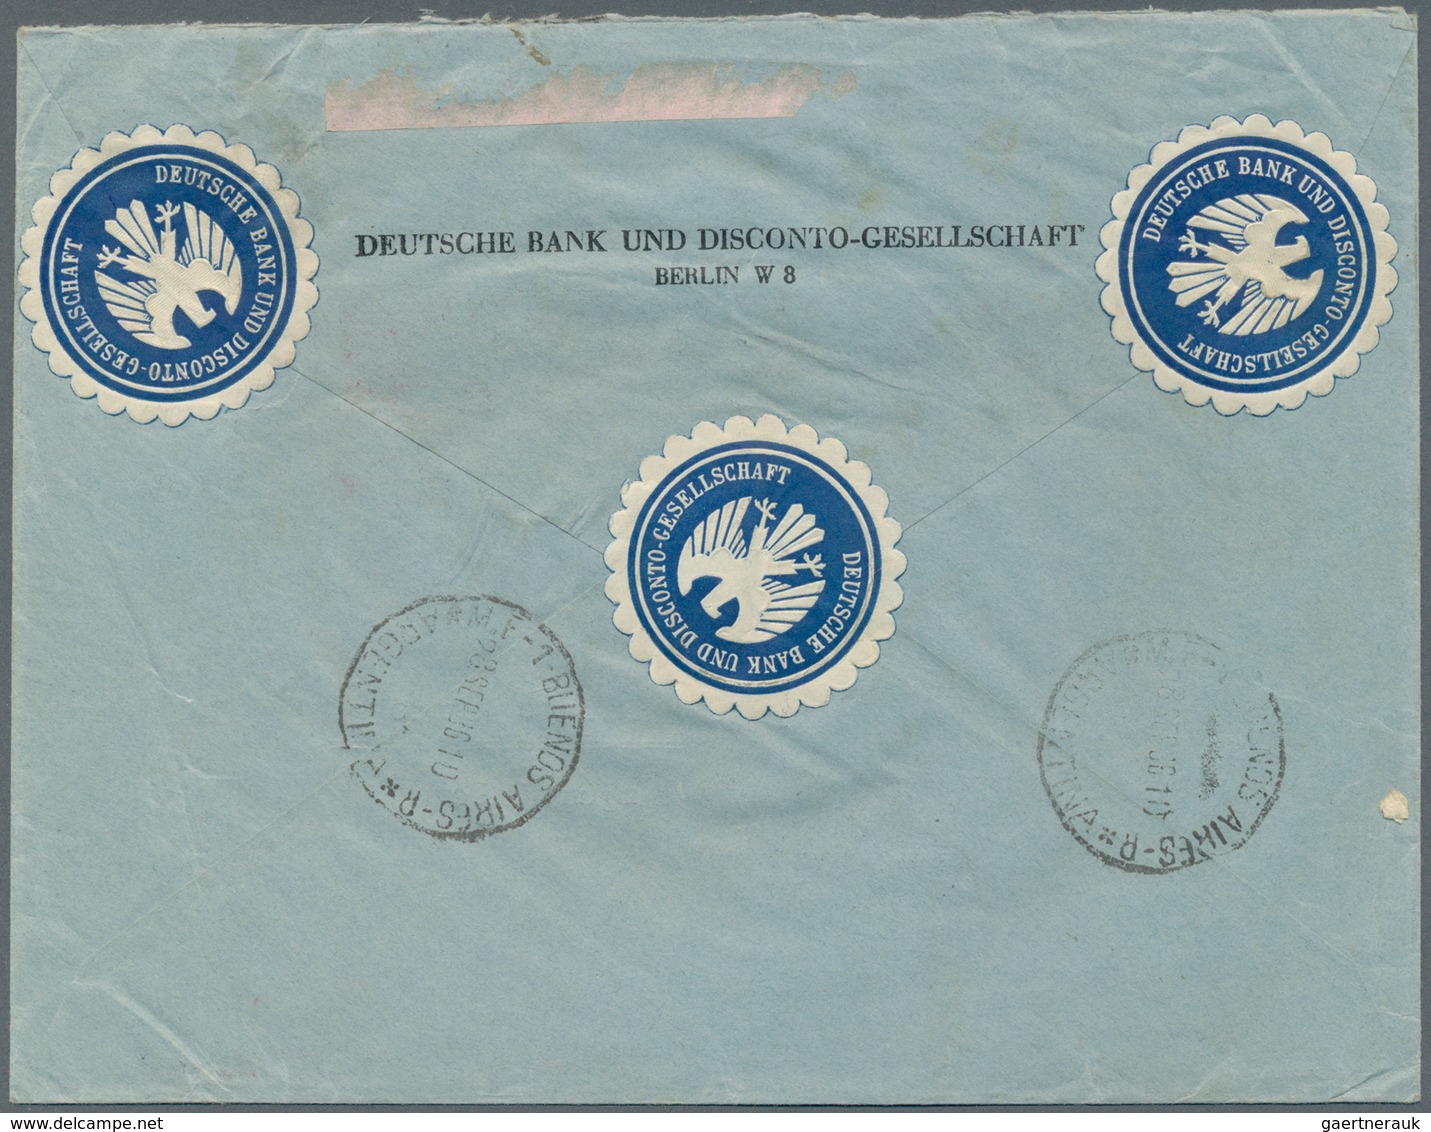 Deutsches Reich - 3. Reich: 1936 (32.9.), Chicagofahrt 3x 4 Reichsmark (senkrechtes Paar + Einzelstü - Covers & Documents